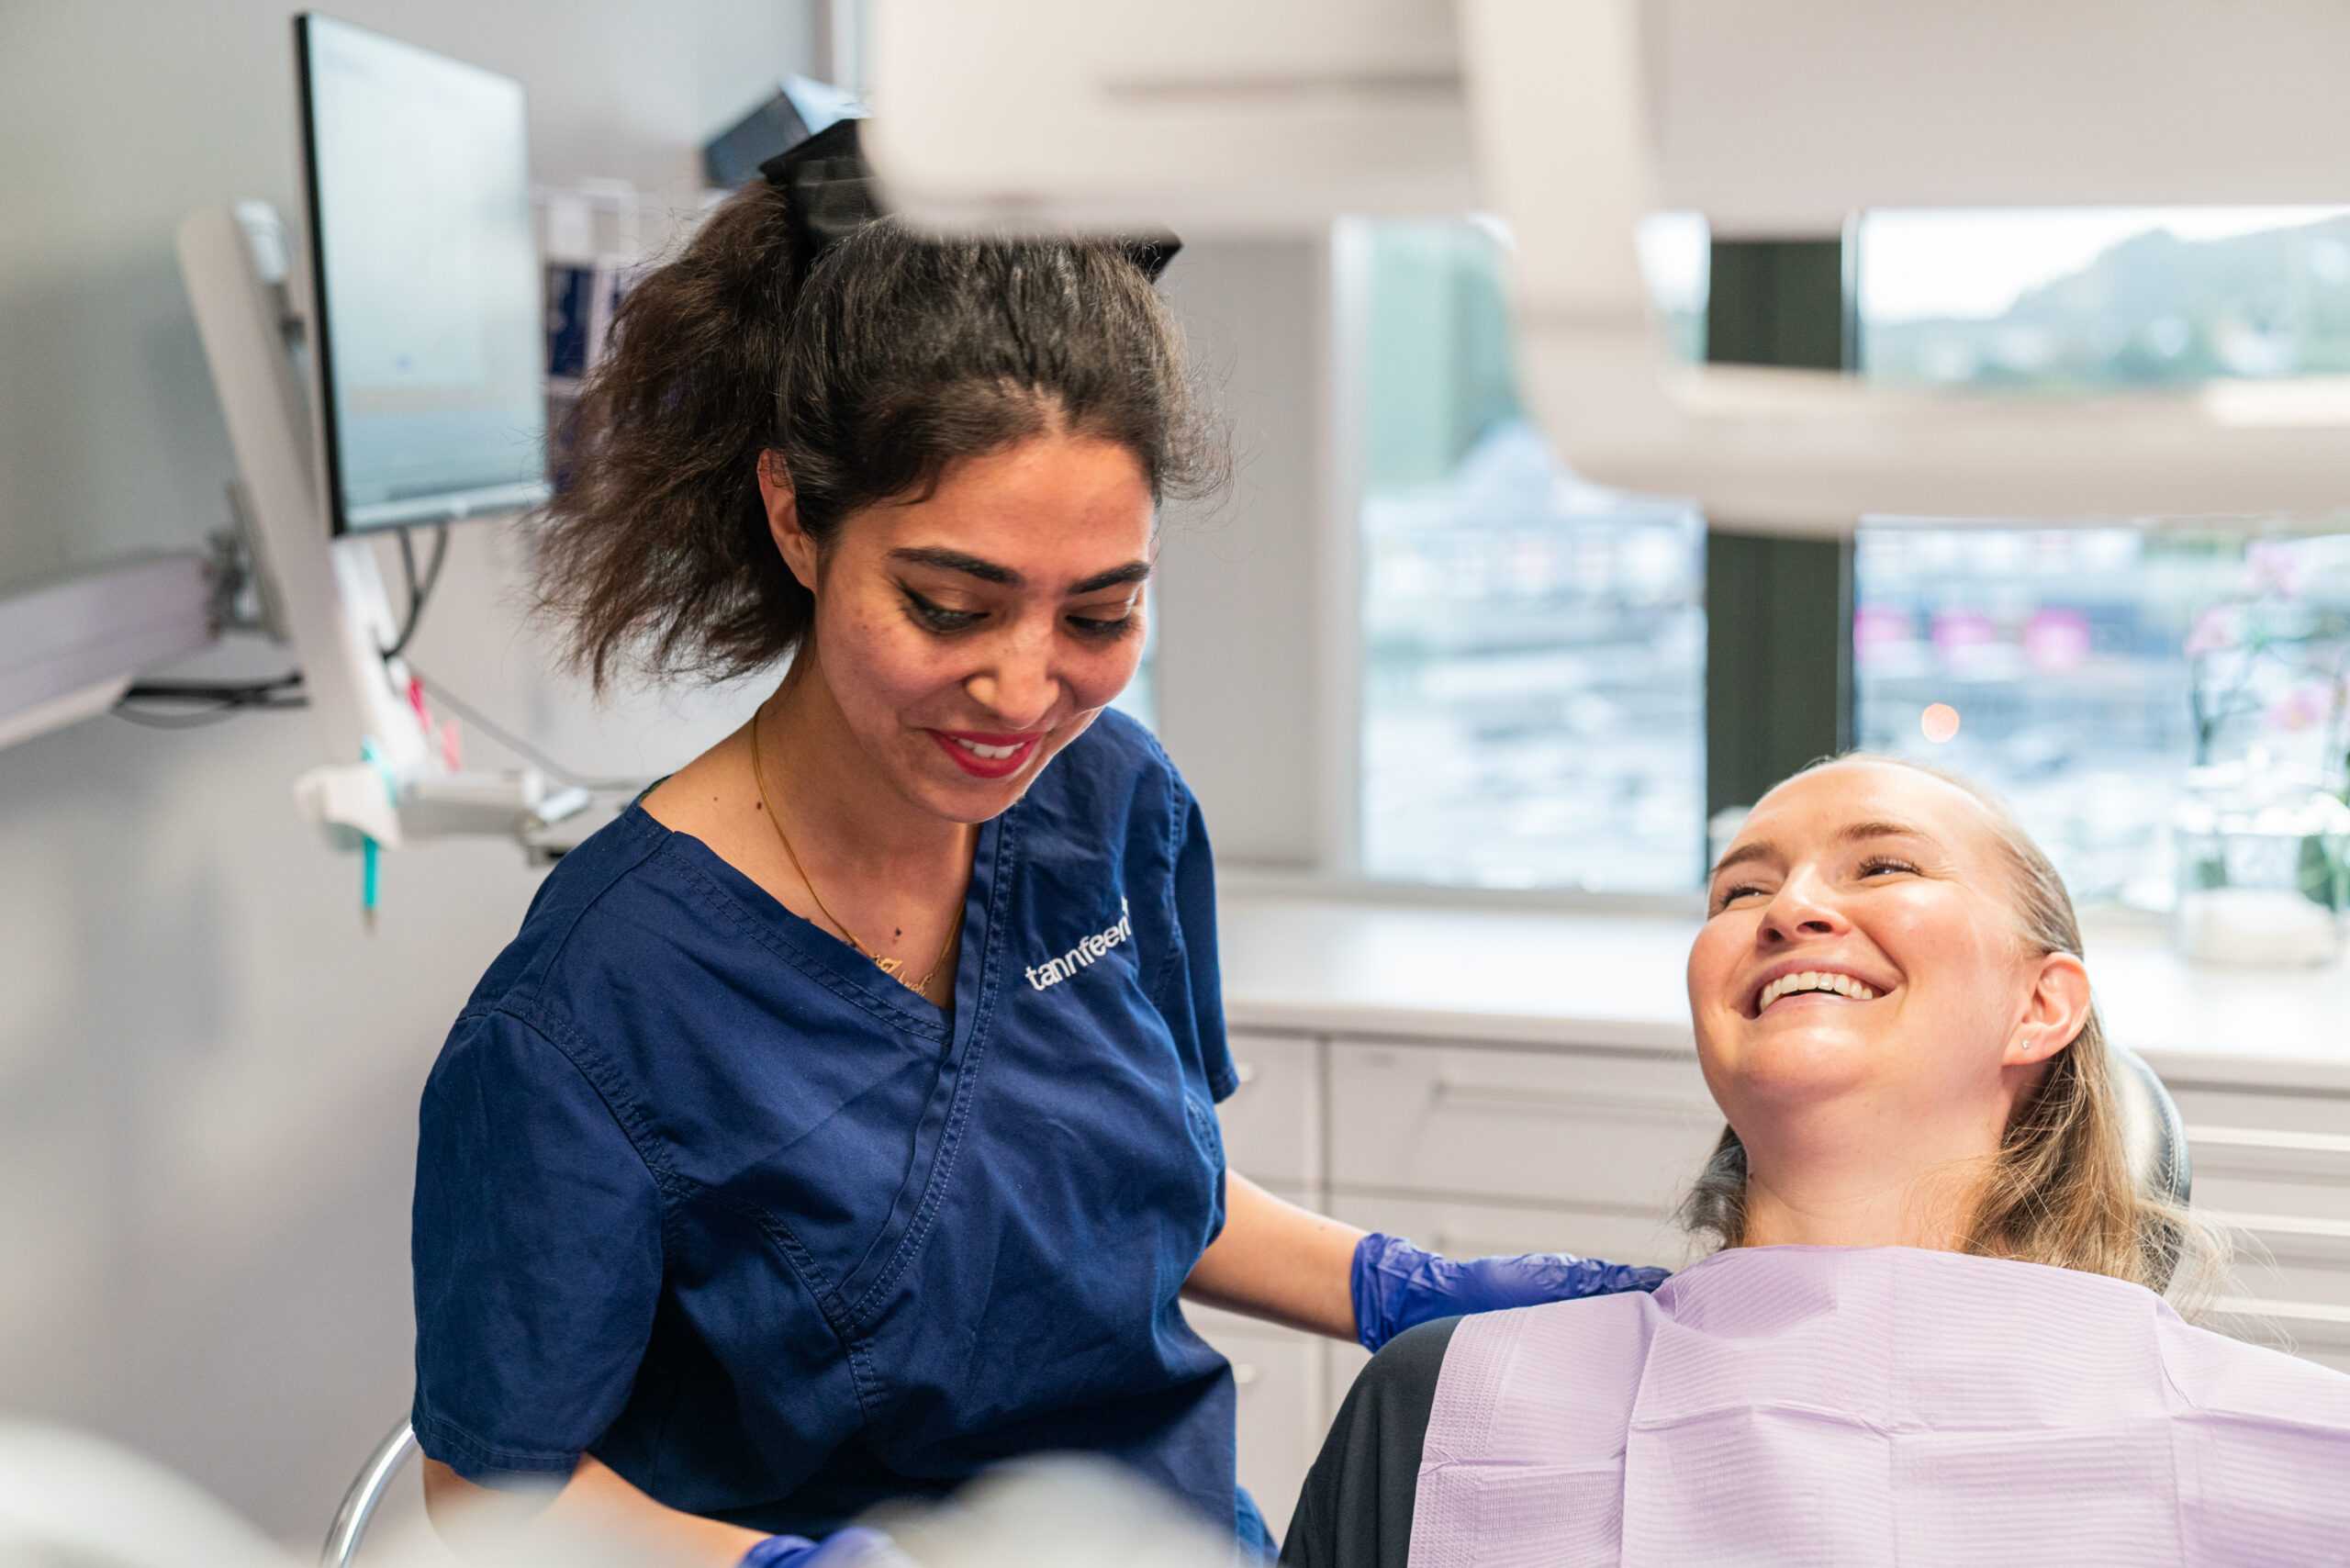 Tannpleieren gir grundig veiledning og forsikrer pasienten om at de vil få omsorgsfull behandling.